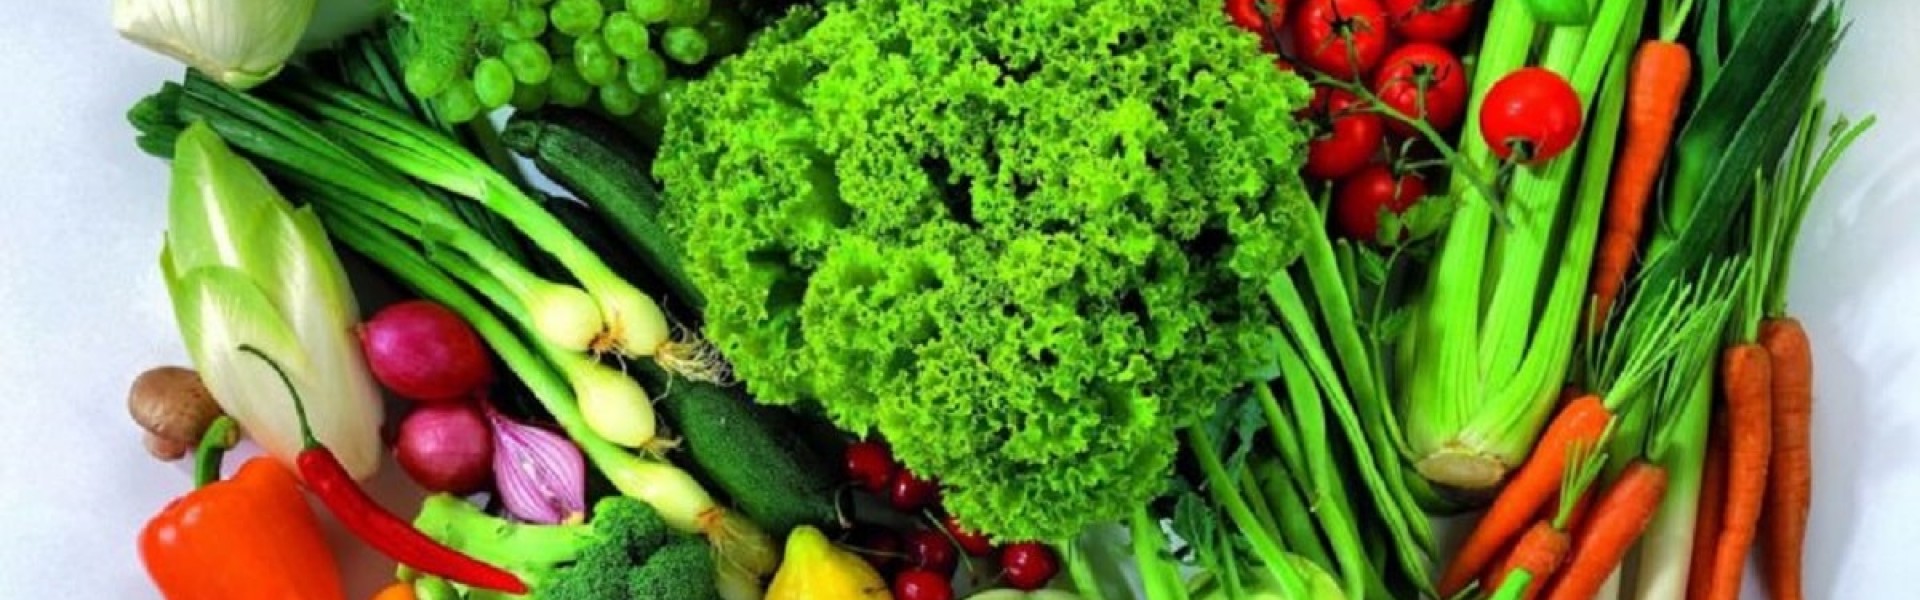 پسکجا-سبزیجات-آماده-طبخ-عطر-ریحون